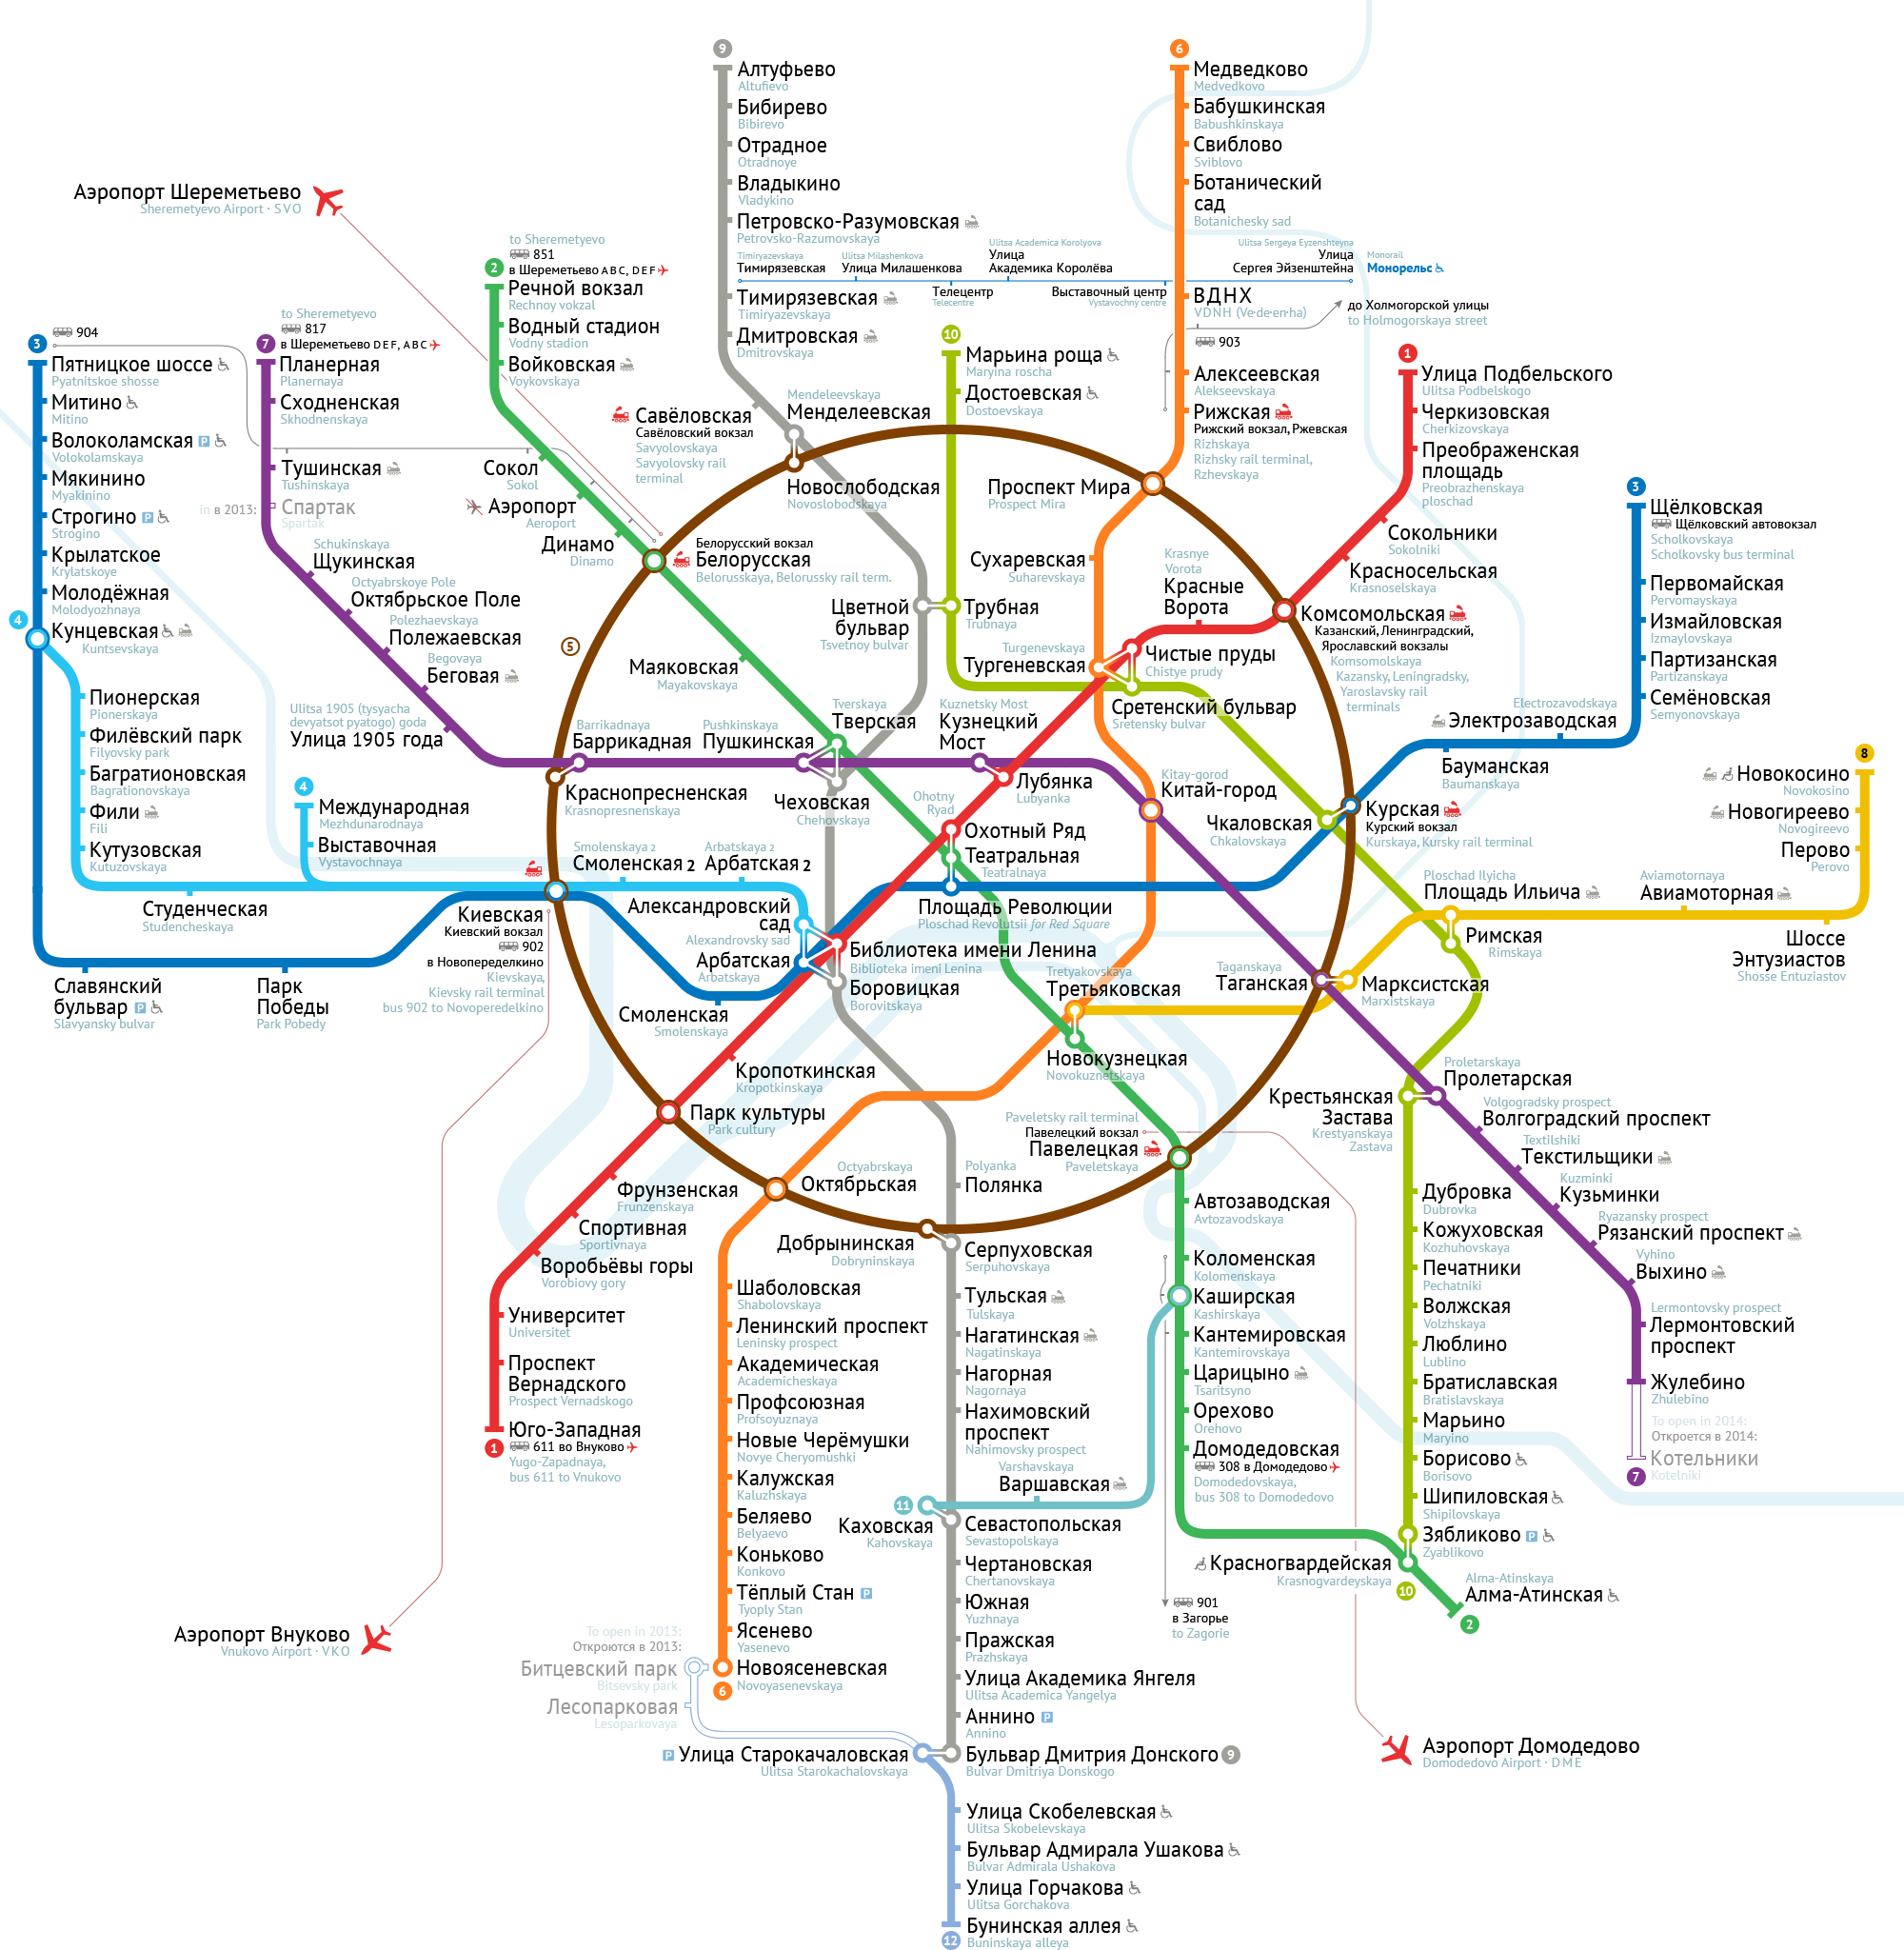 Moscow Metro map by Ilya Birman